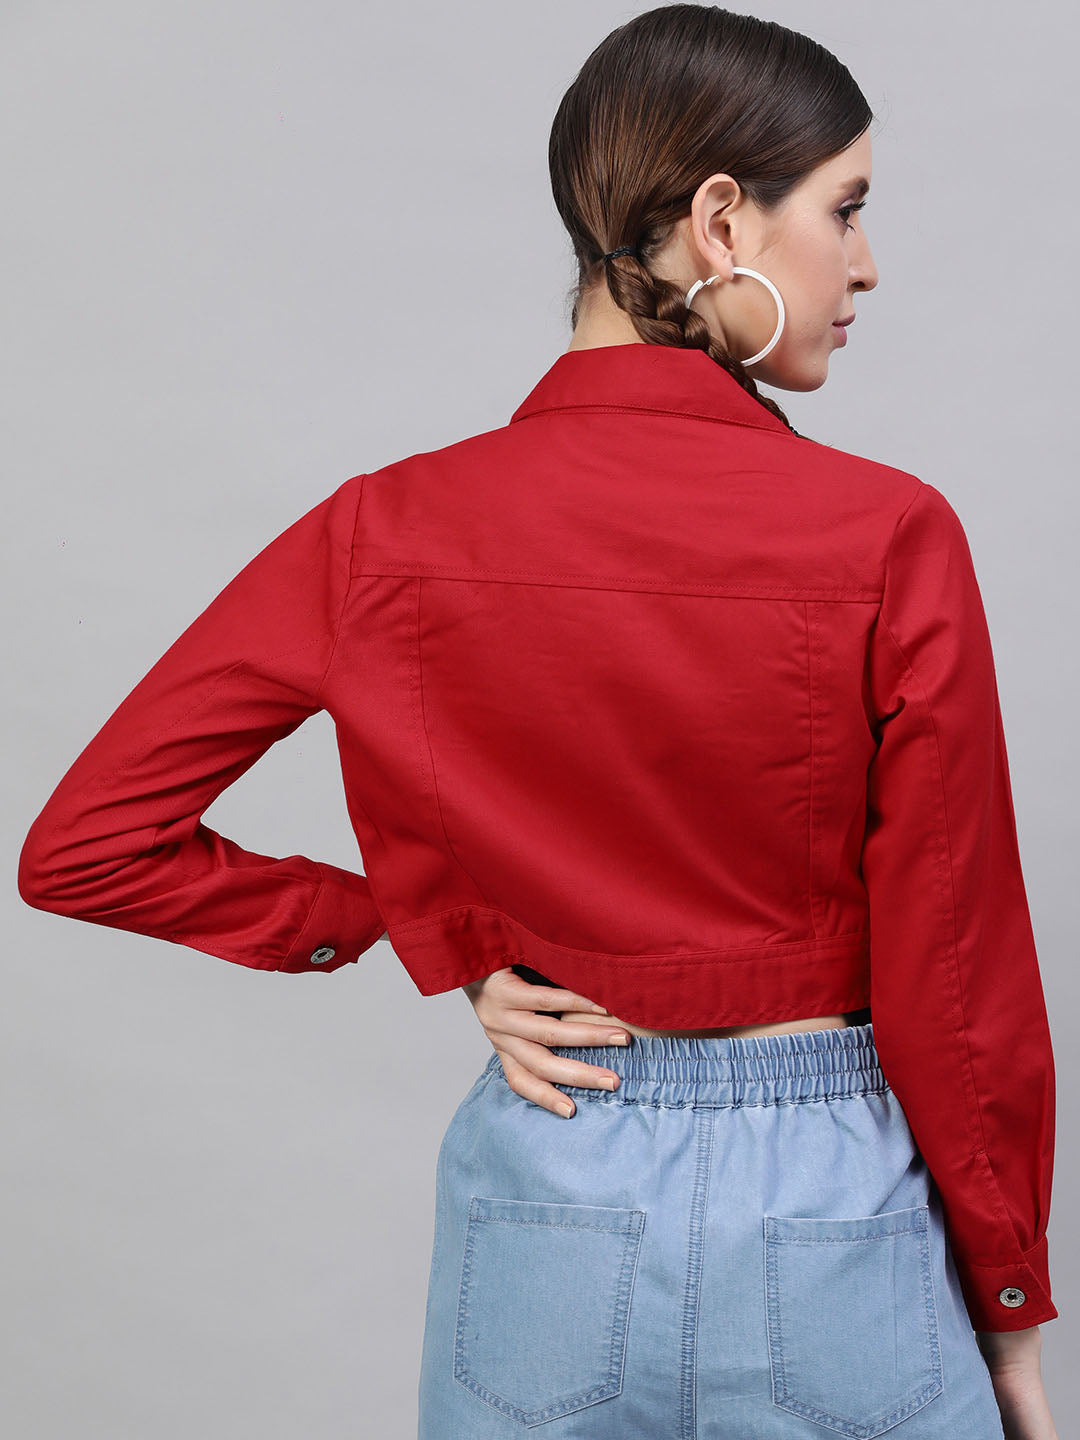 Vintage 1990s Red Denim Skirt and Jacket Set Large 17 - Etsy